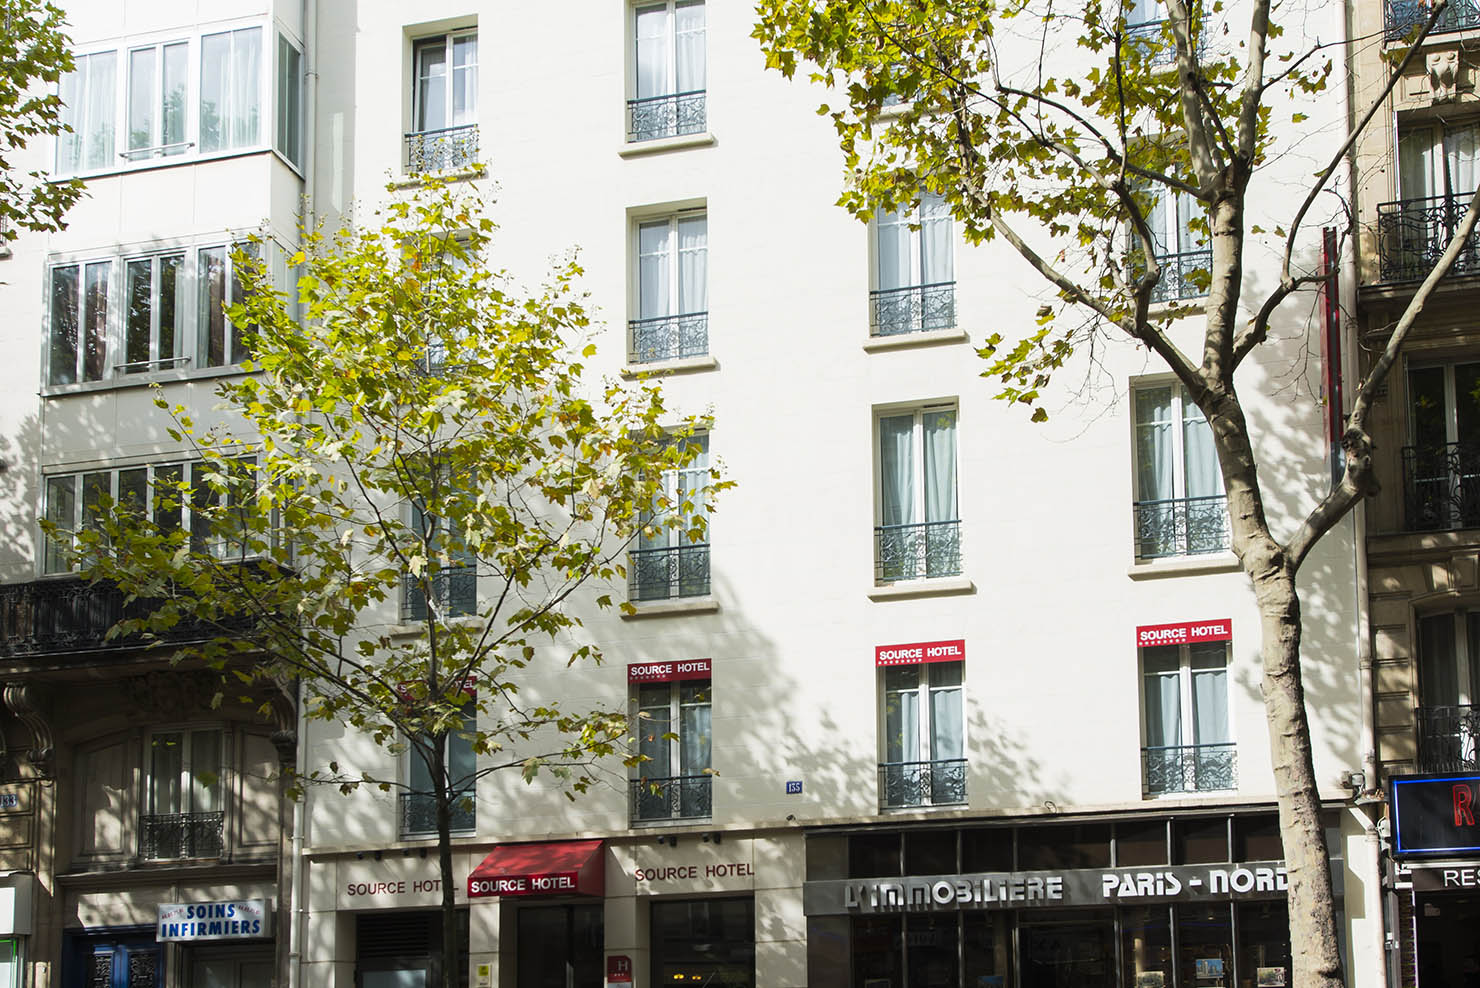 Source hôtel - hôtel familial - 3 étoiles - Paris - Montmartre - Sacré coeur - pigalle - moulin rouge - stade de france - pas cher